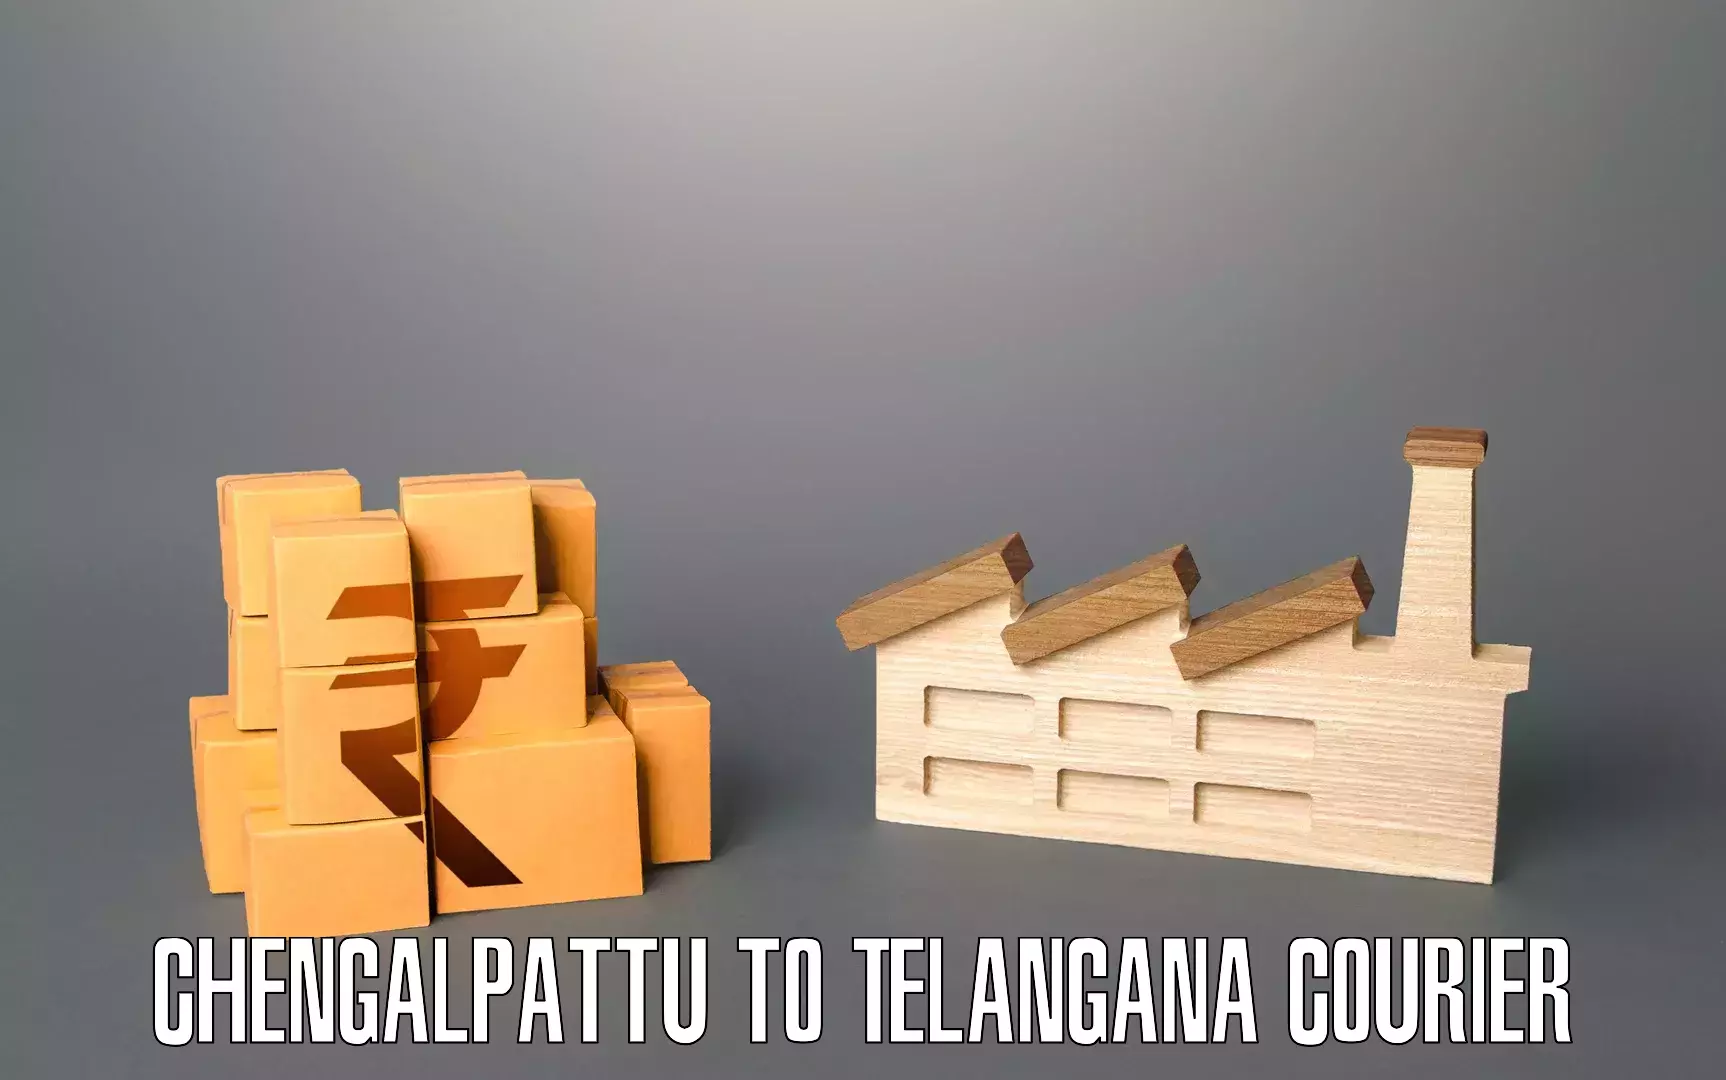 Professional home movers Chengalpattu to Telangana